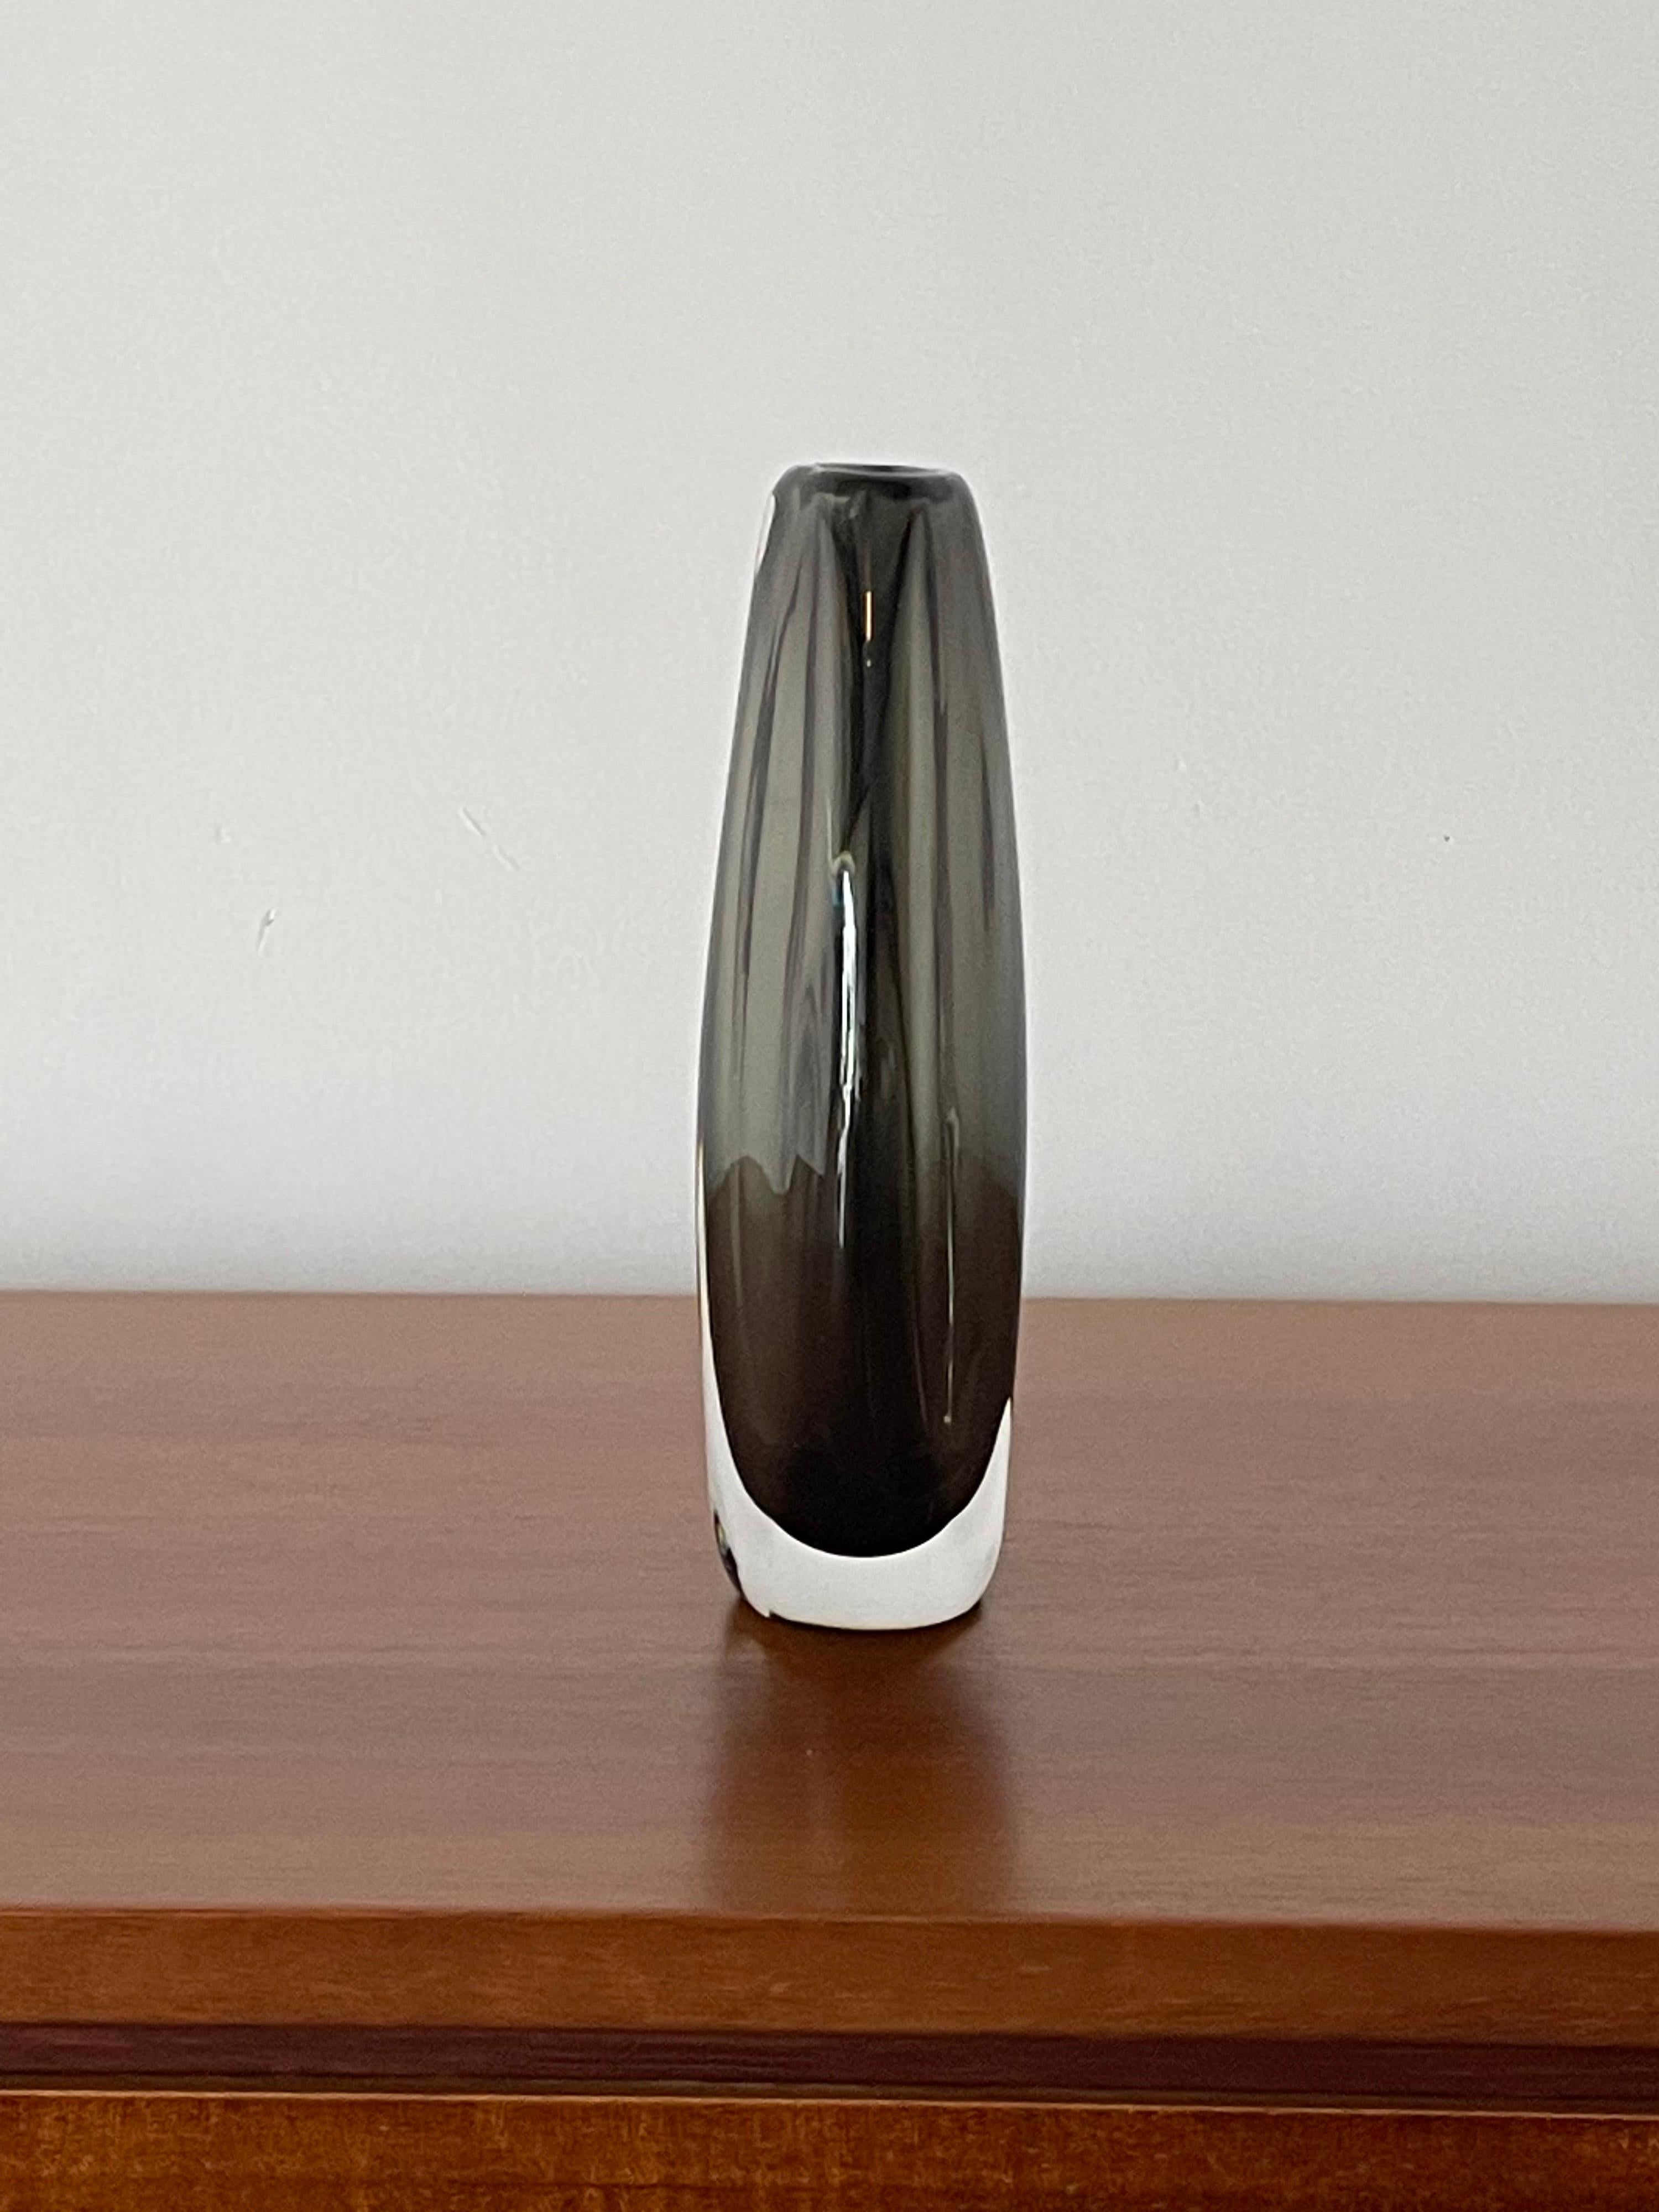 Élégant vase en verre conçu par Nils Landberg pour Orrefors, exécuté selon la technique 